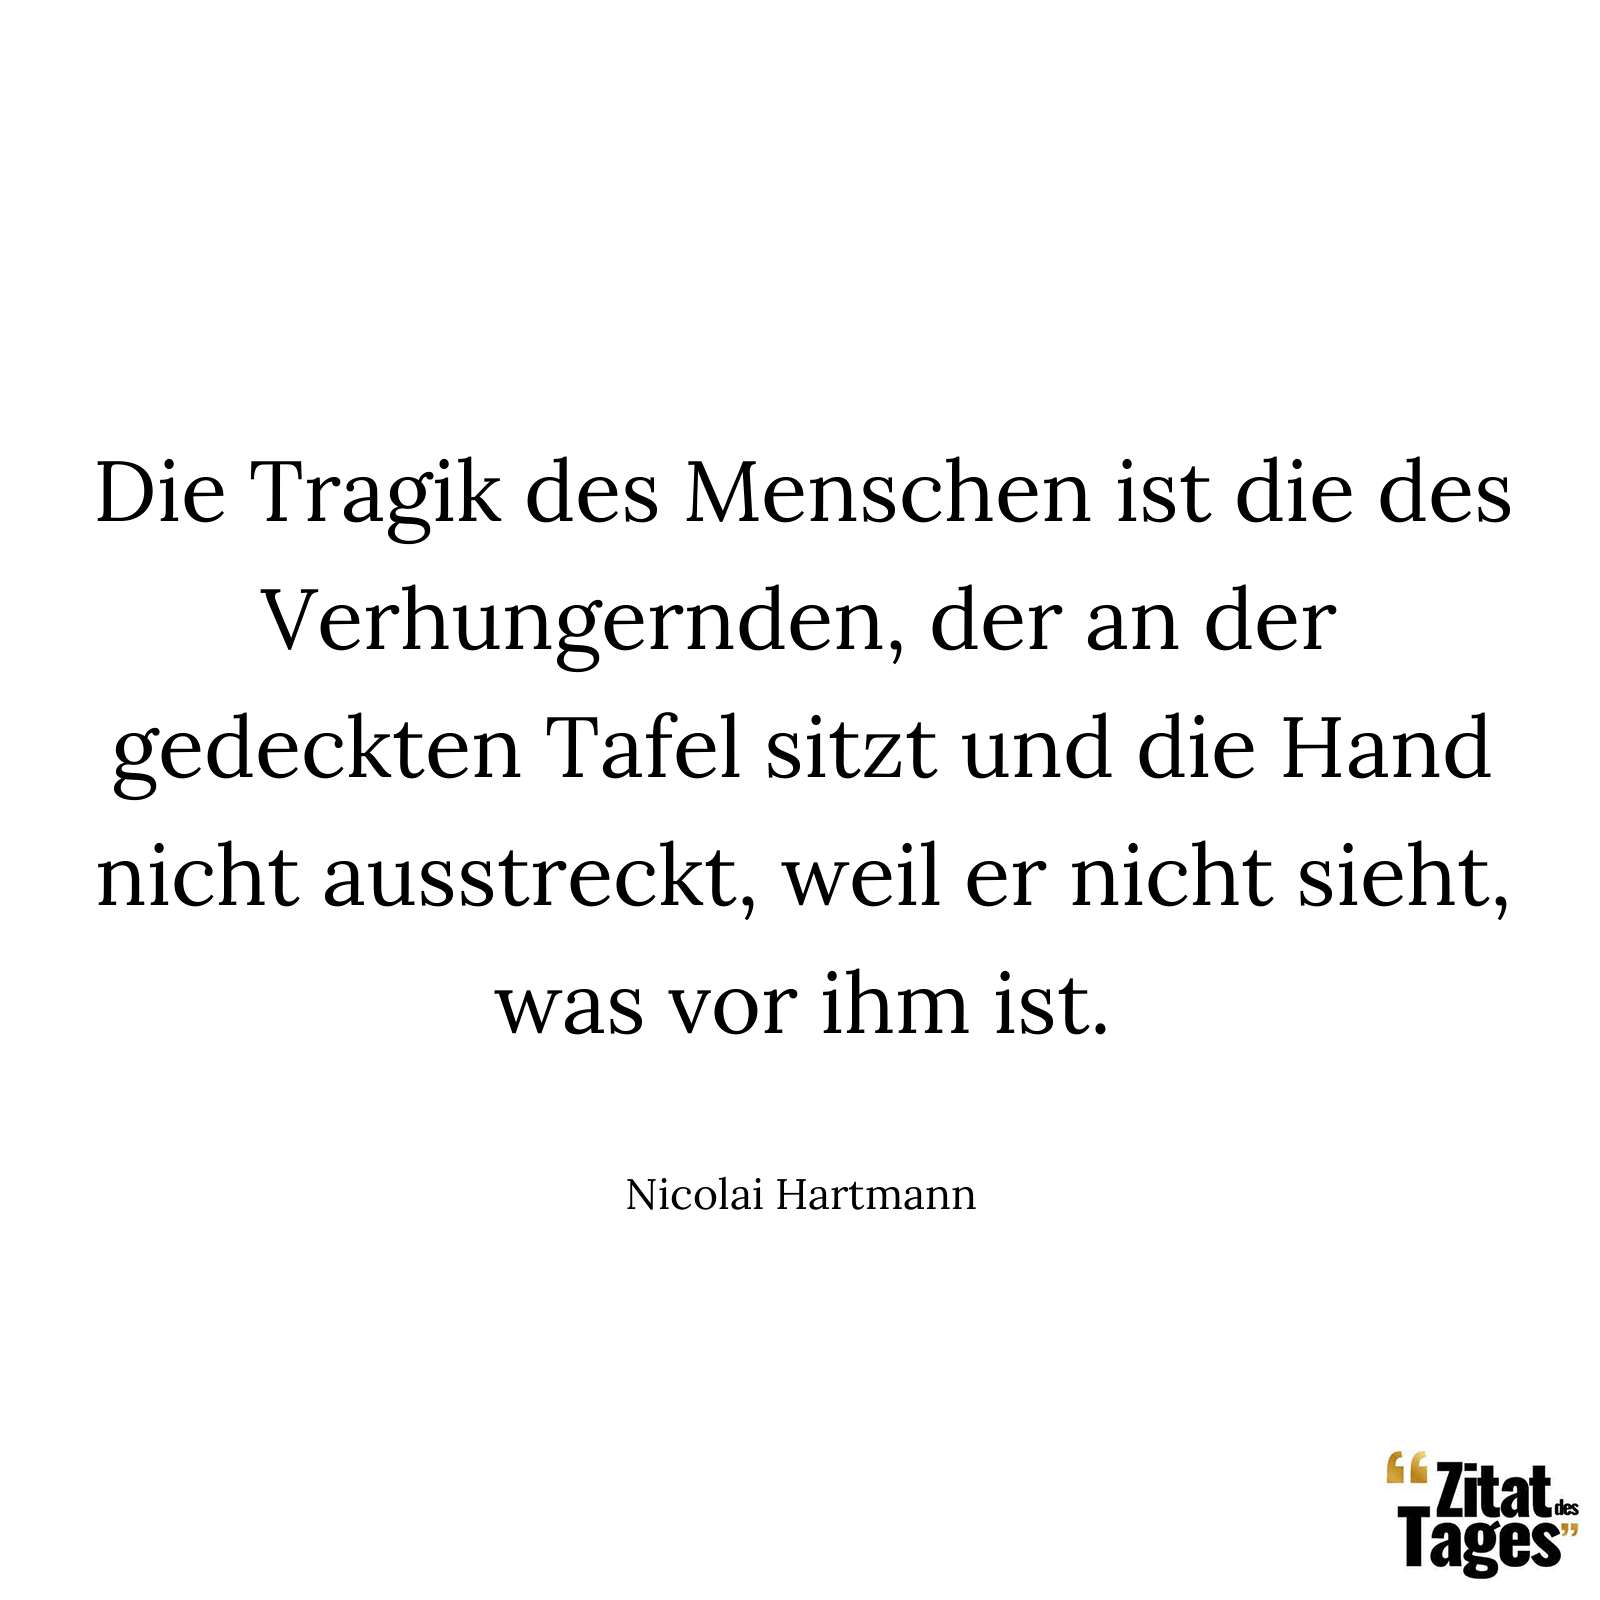 Die Tragik des Menschen ist die des Verhungernden, der an der gedeckten Tafel sitzt und die Hand nicht ausstreckt, weil er nicht sieht, was vor ihm ist. - Nicolai Hartmann